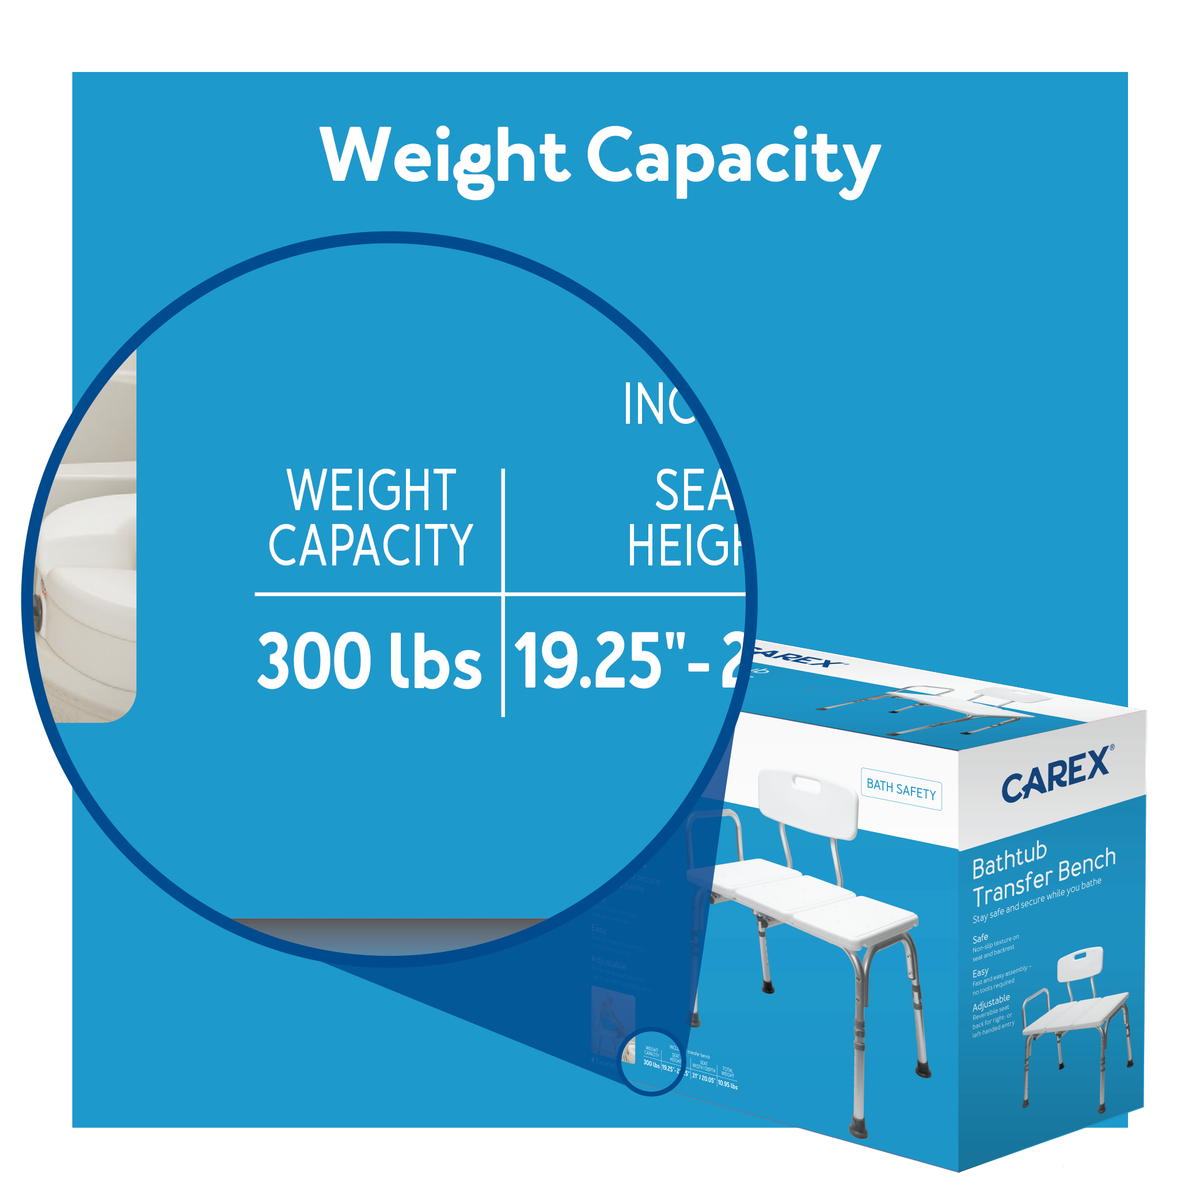 Weight Capacity